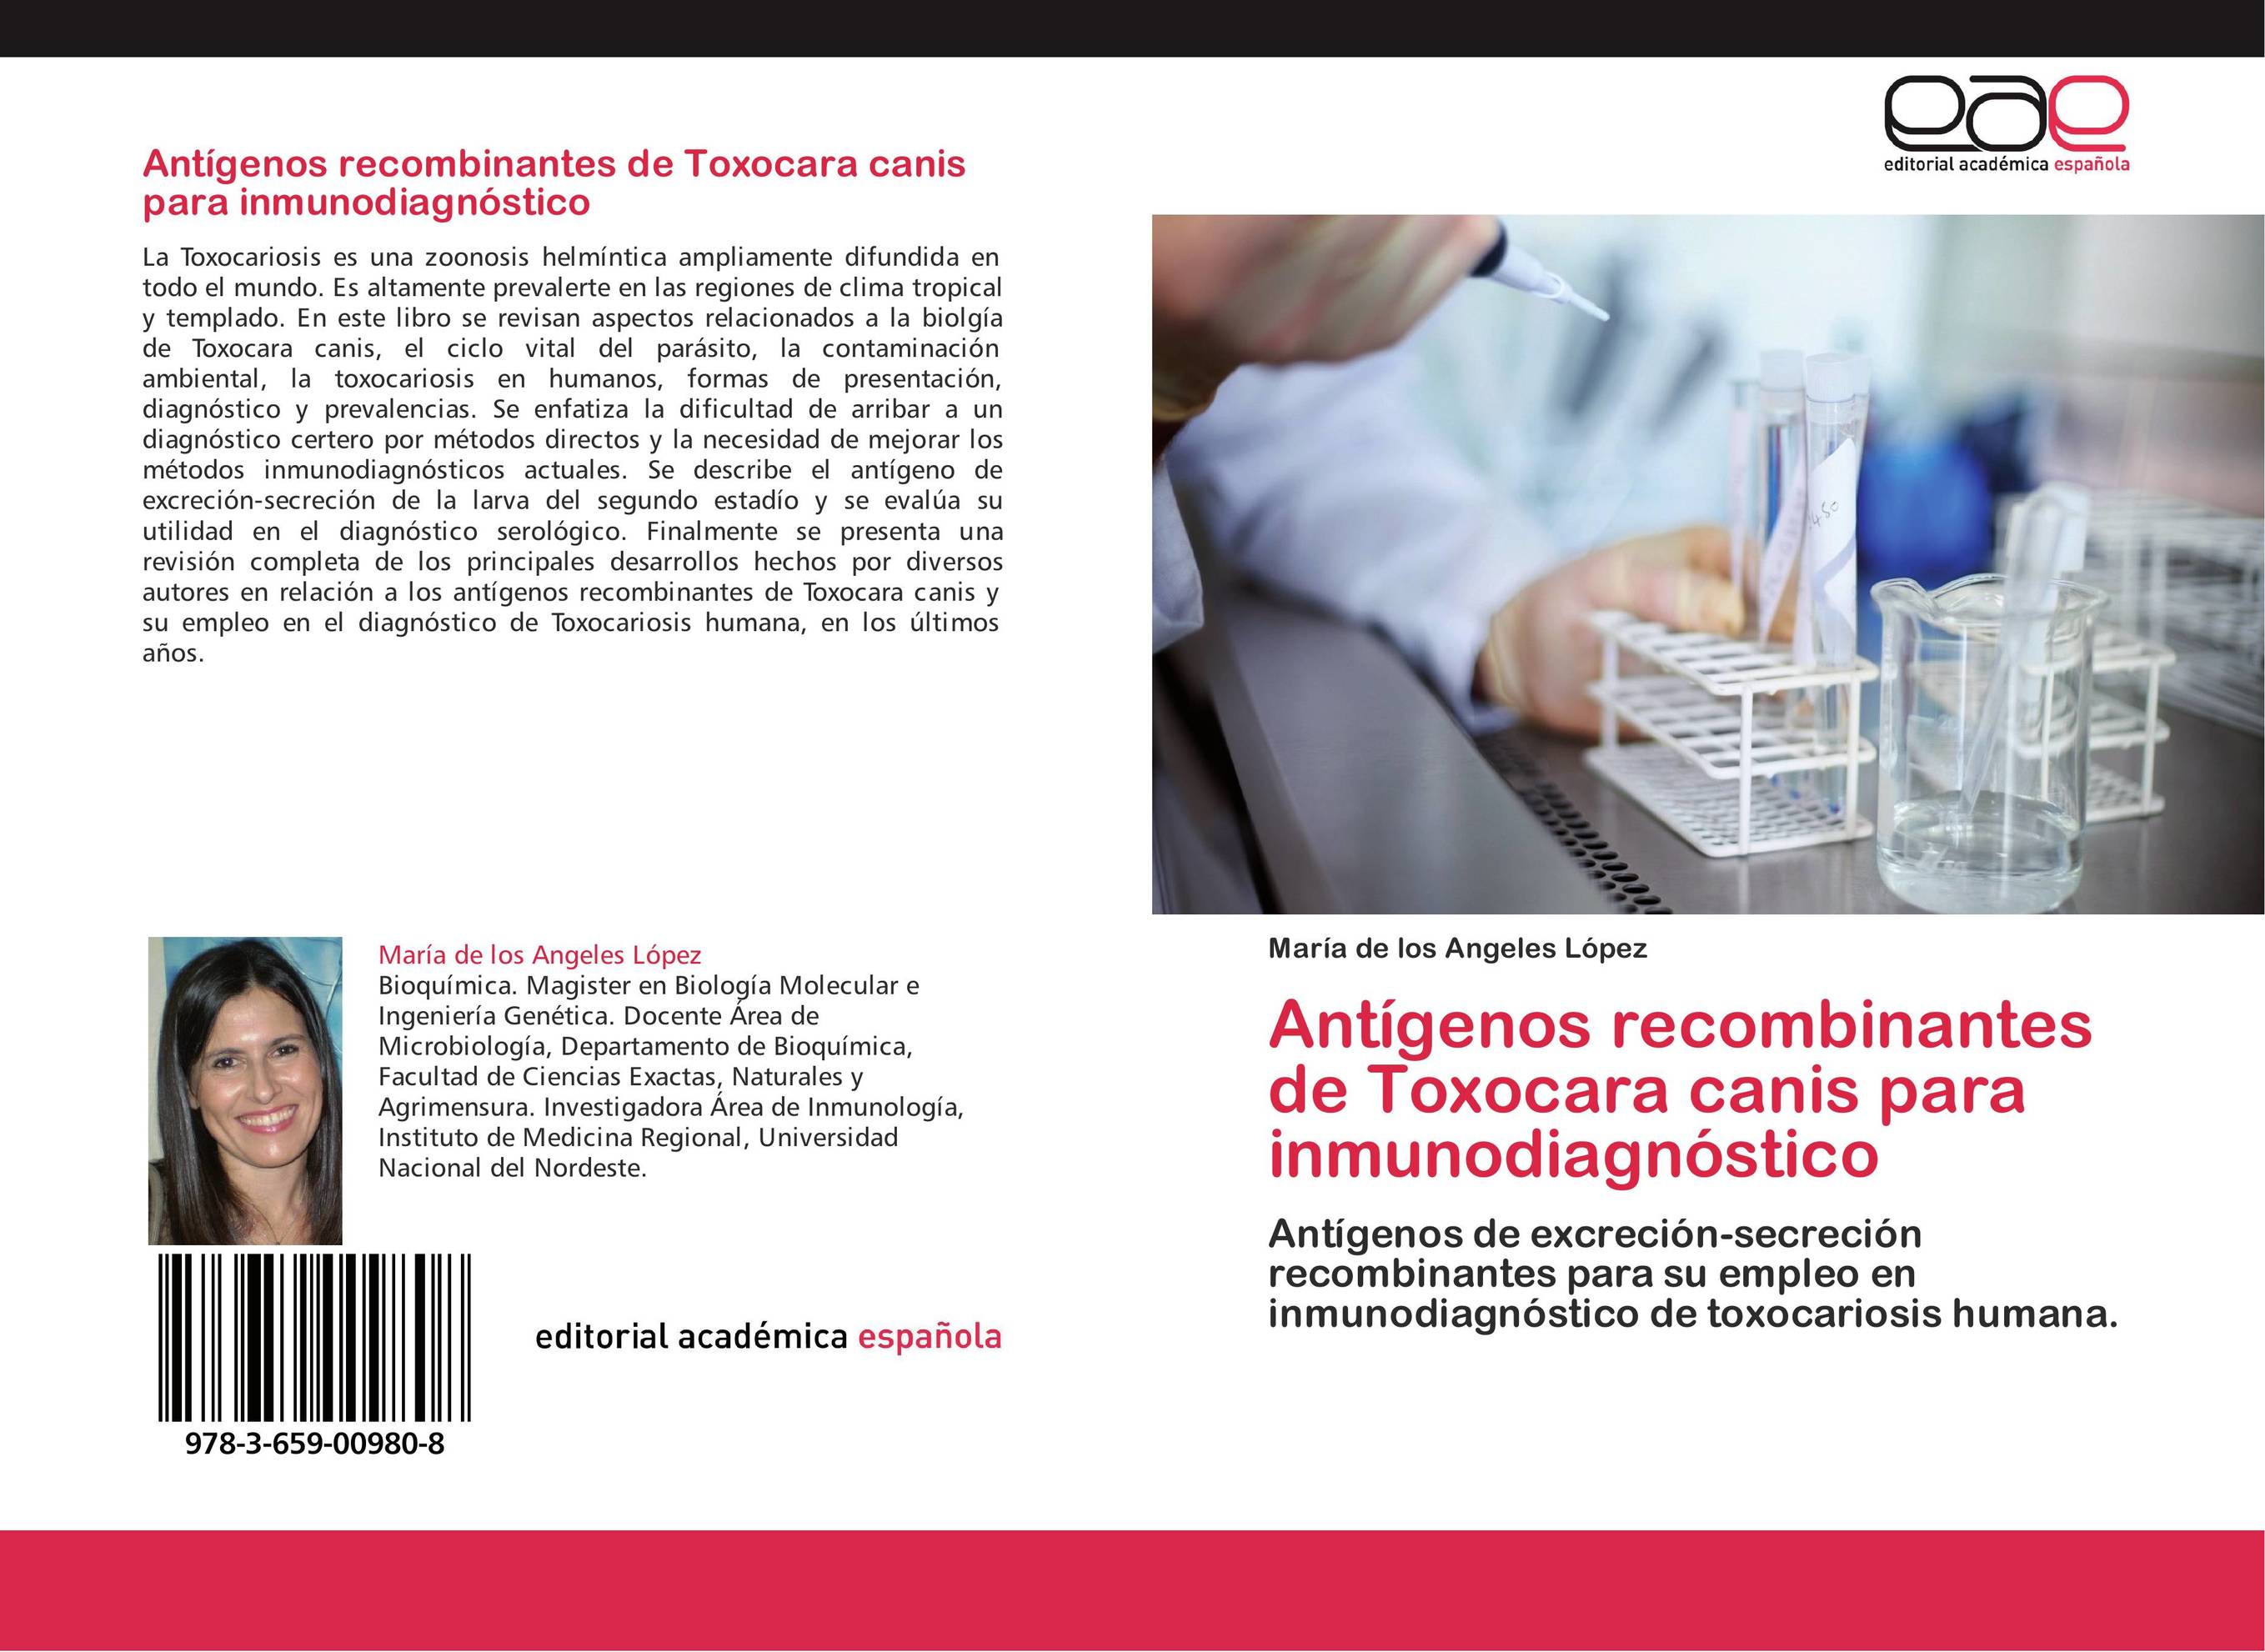 Antígenos recombinantes de Toxocara canis para inmunodiagnóstico